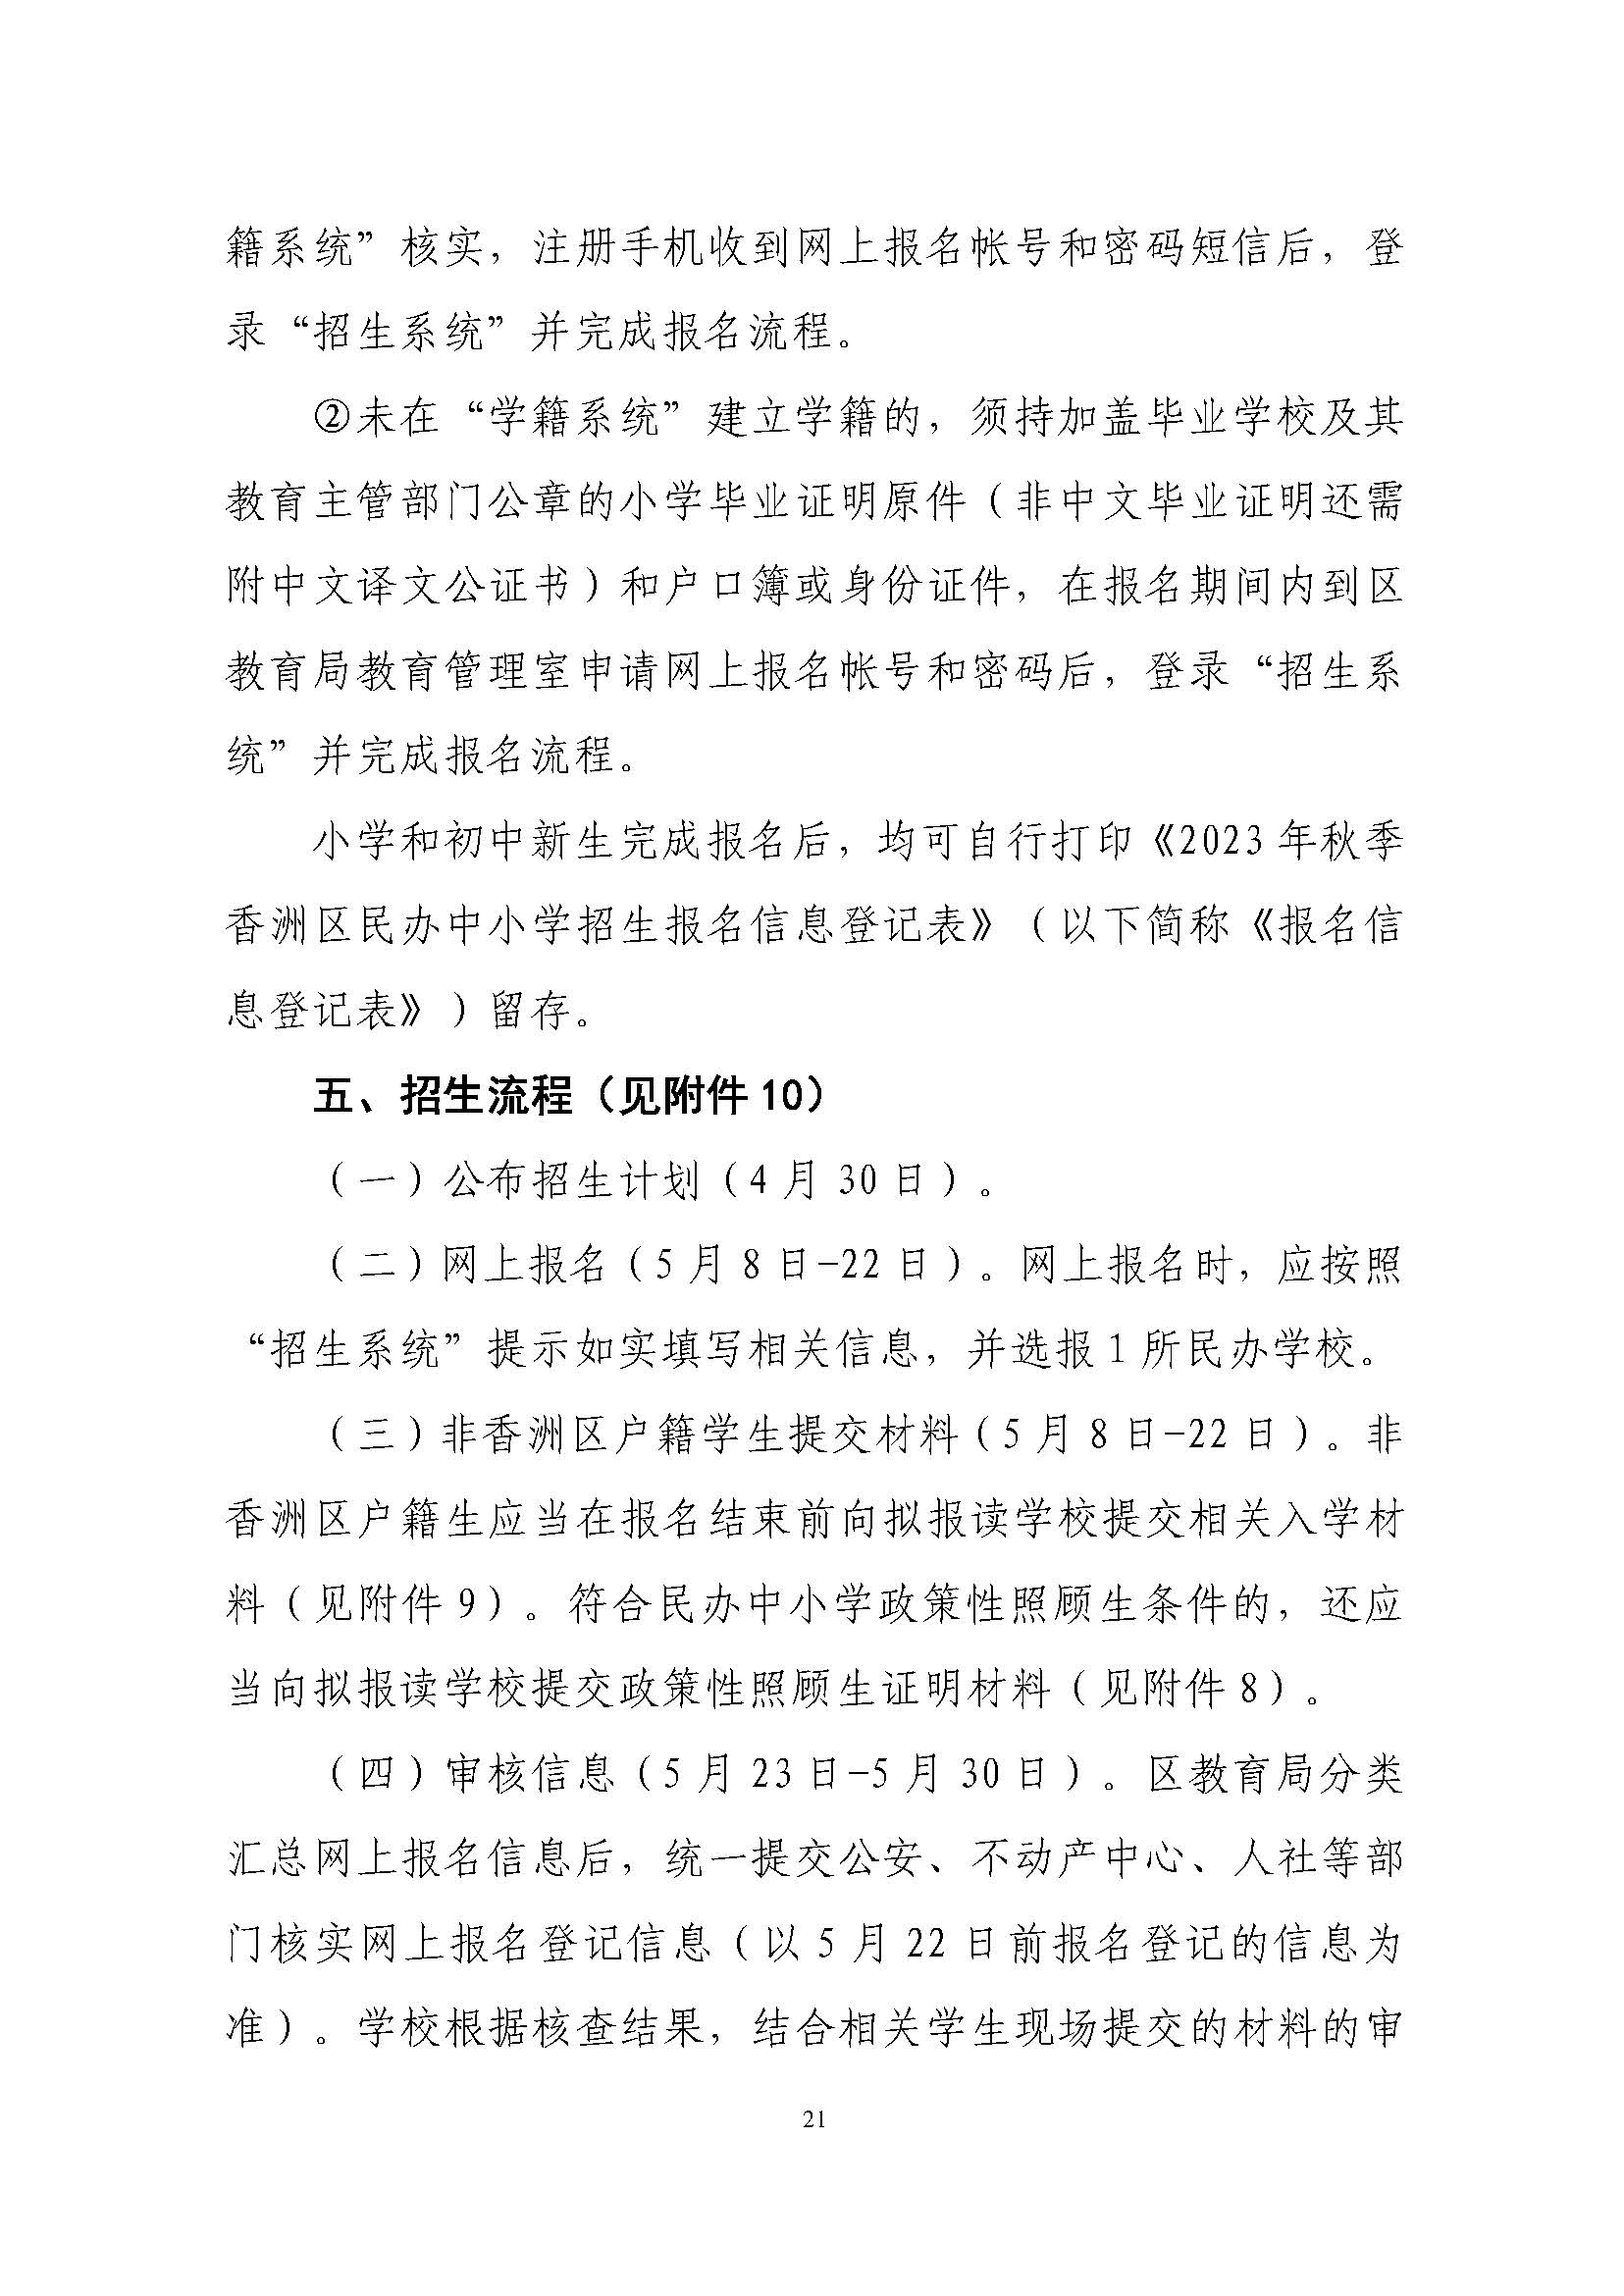 關于印發2023年秋季香洲區中小學招生工作實施細則的通知（定稿）_頁面_22.jpg